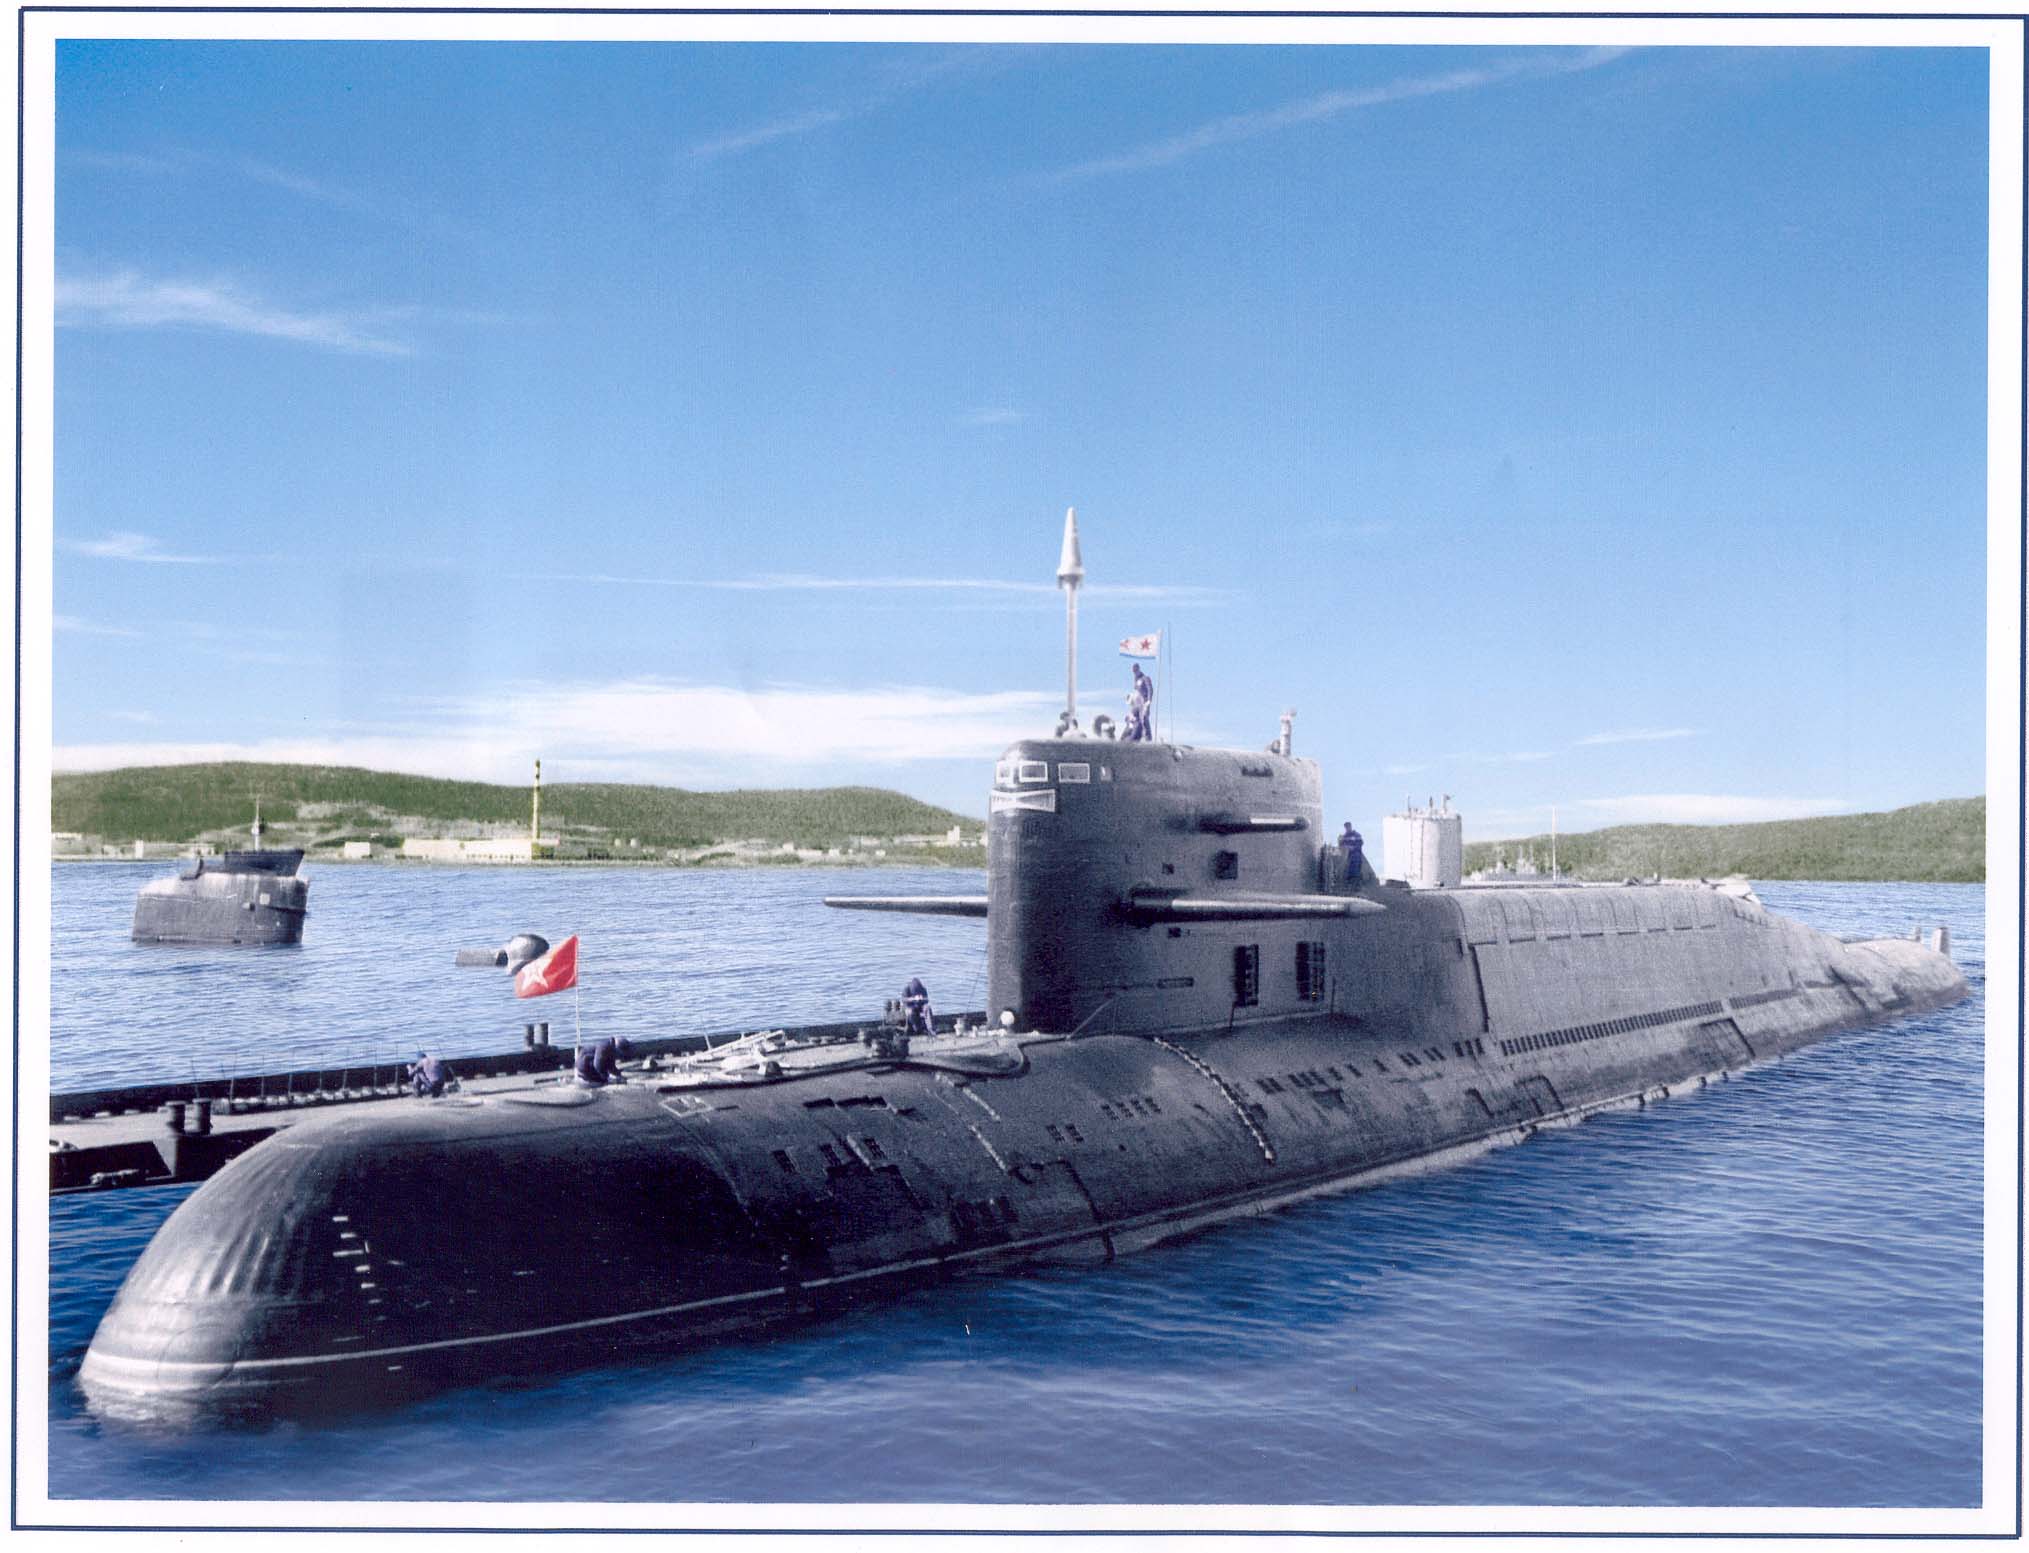 Пл пр т. Подводная лодка 667бд. 667а проект подводная лодка. Подводные лодки проекта 667бд «мурена-м». Подводная лодка 667 БД мурена м.